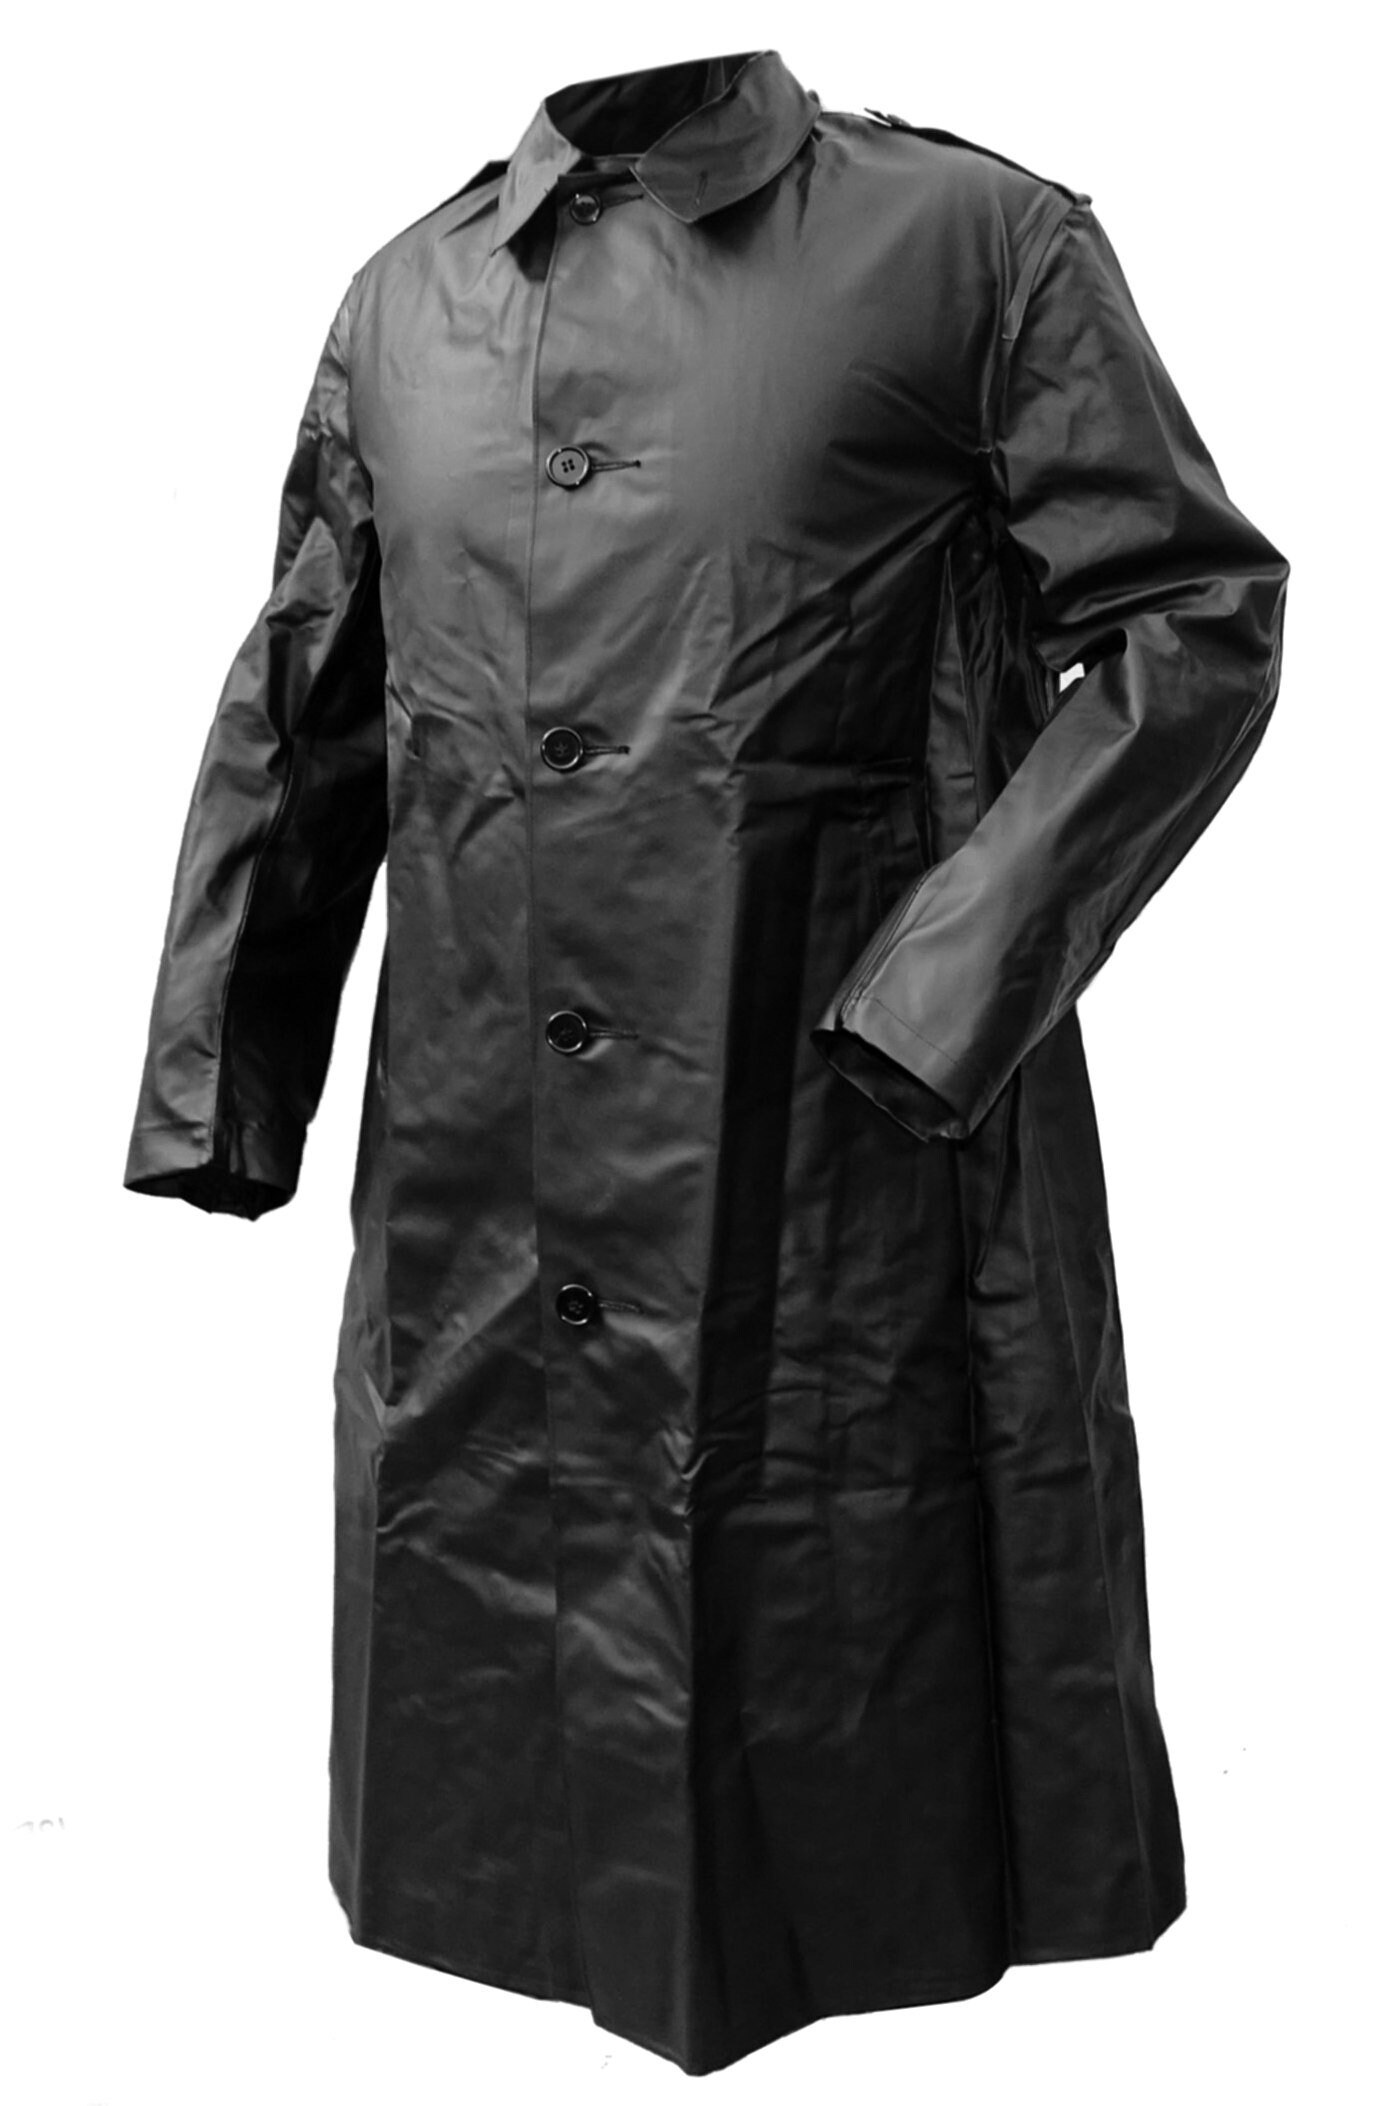 1960s Genuine Swedish Army Black Raincoat Rubber Coat Vintage - Etsy UK